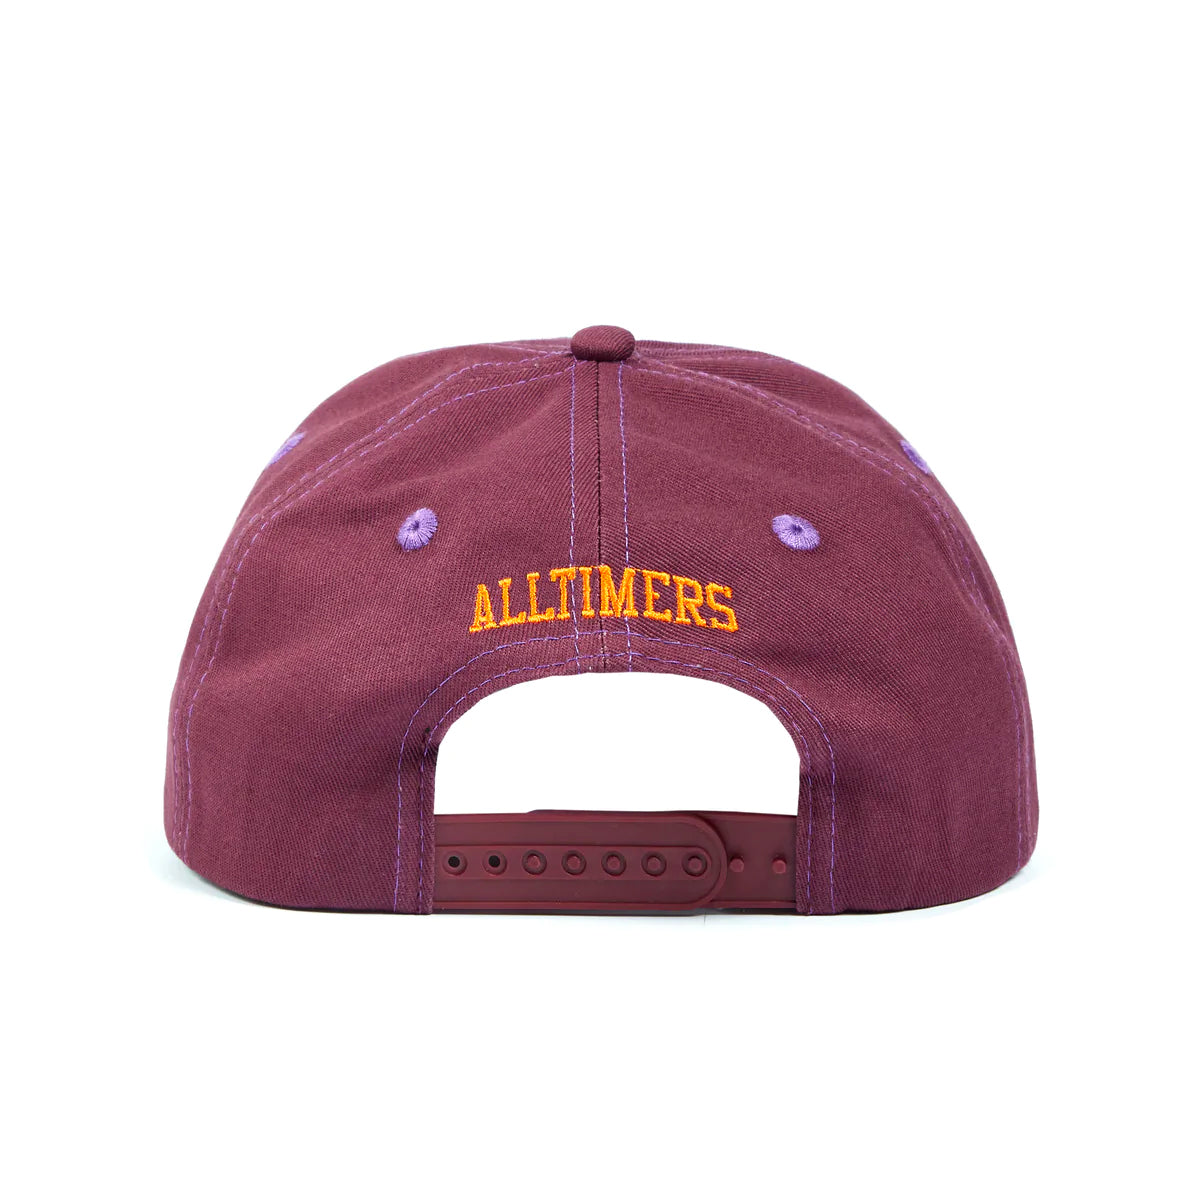 ALLTIMERS - LLV Cap "Purple"